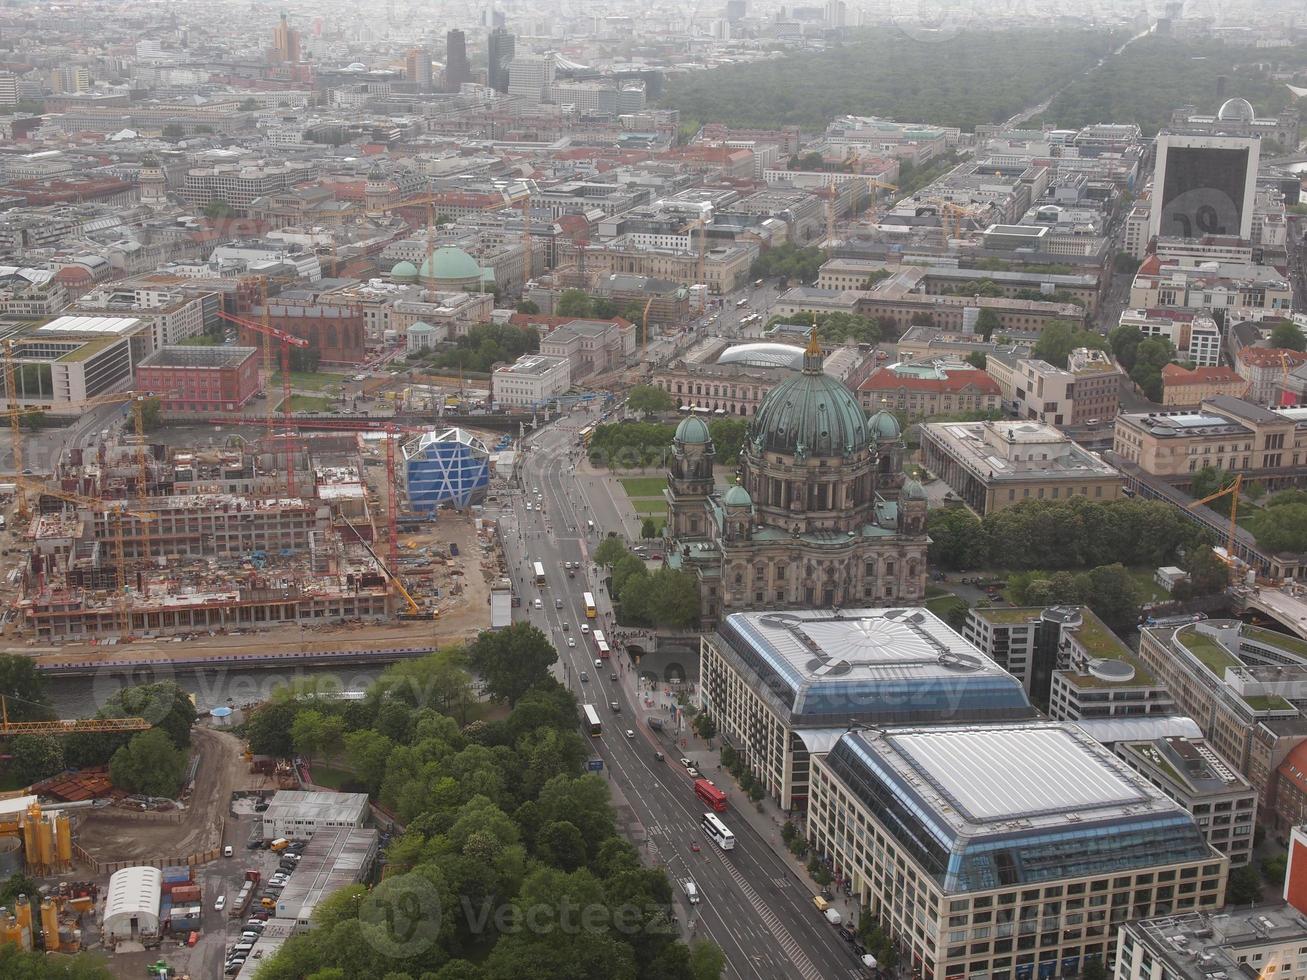 luchtfoto berlijn foto